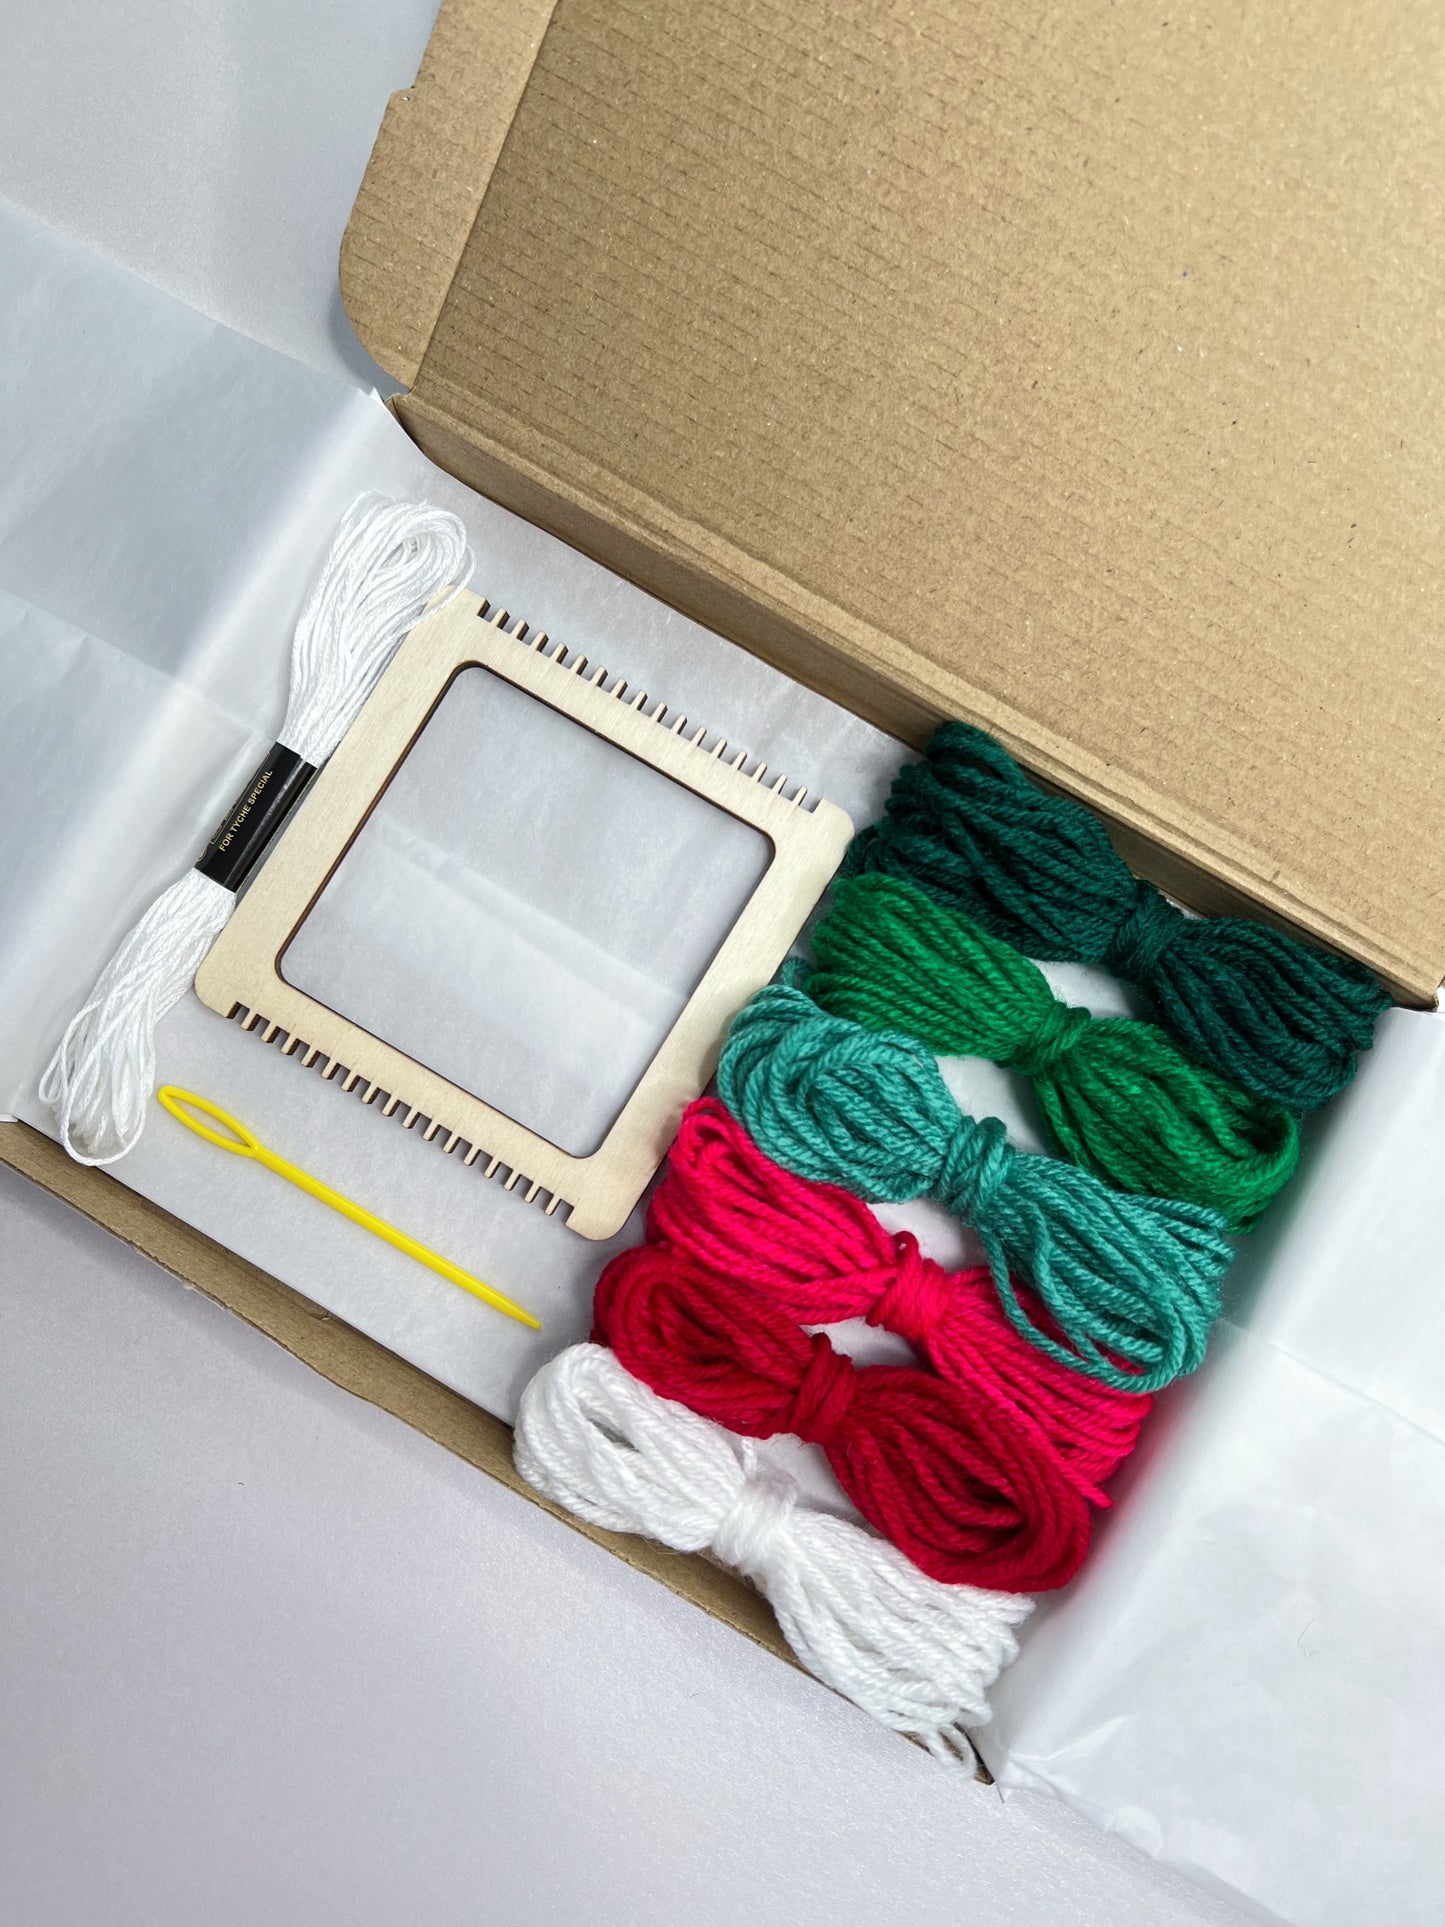 Mini Frame DIY Weaving Kit